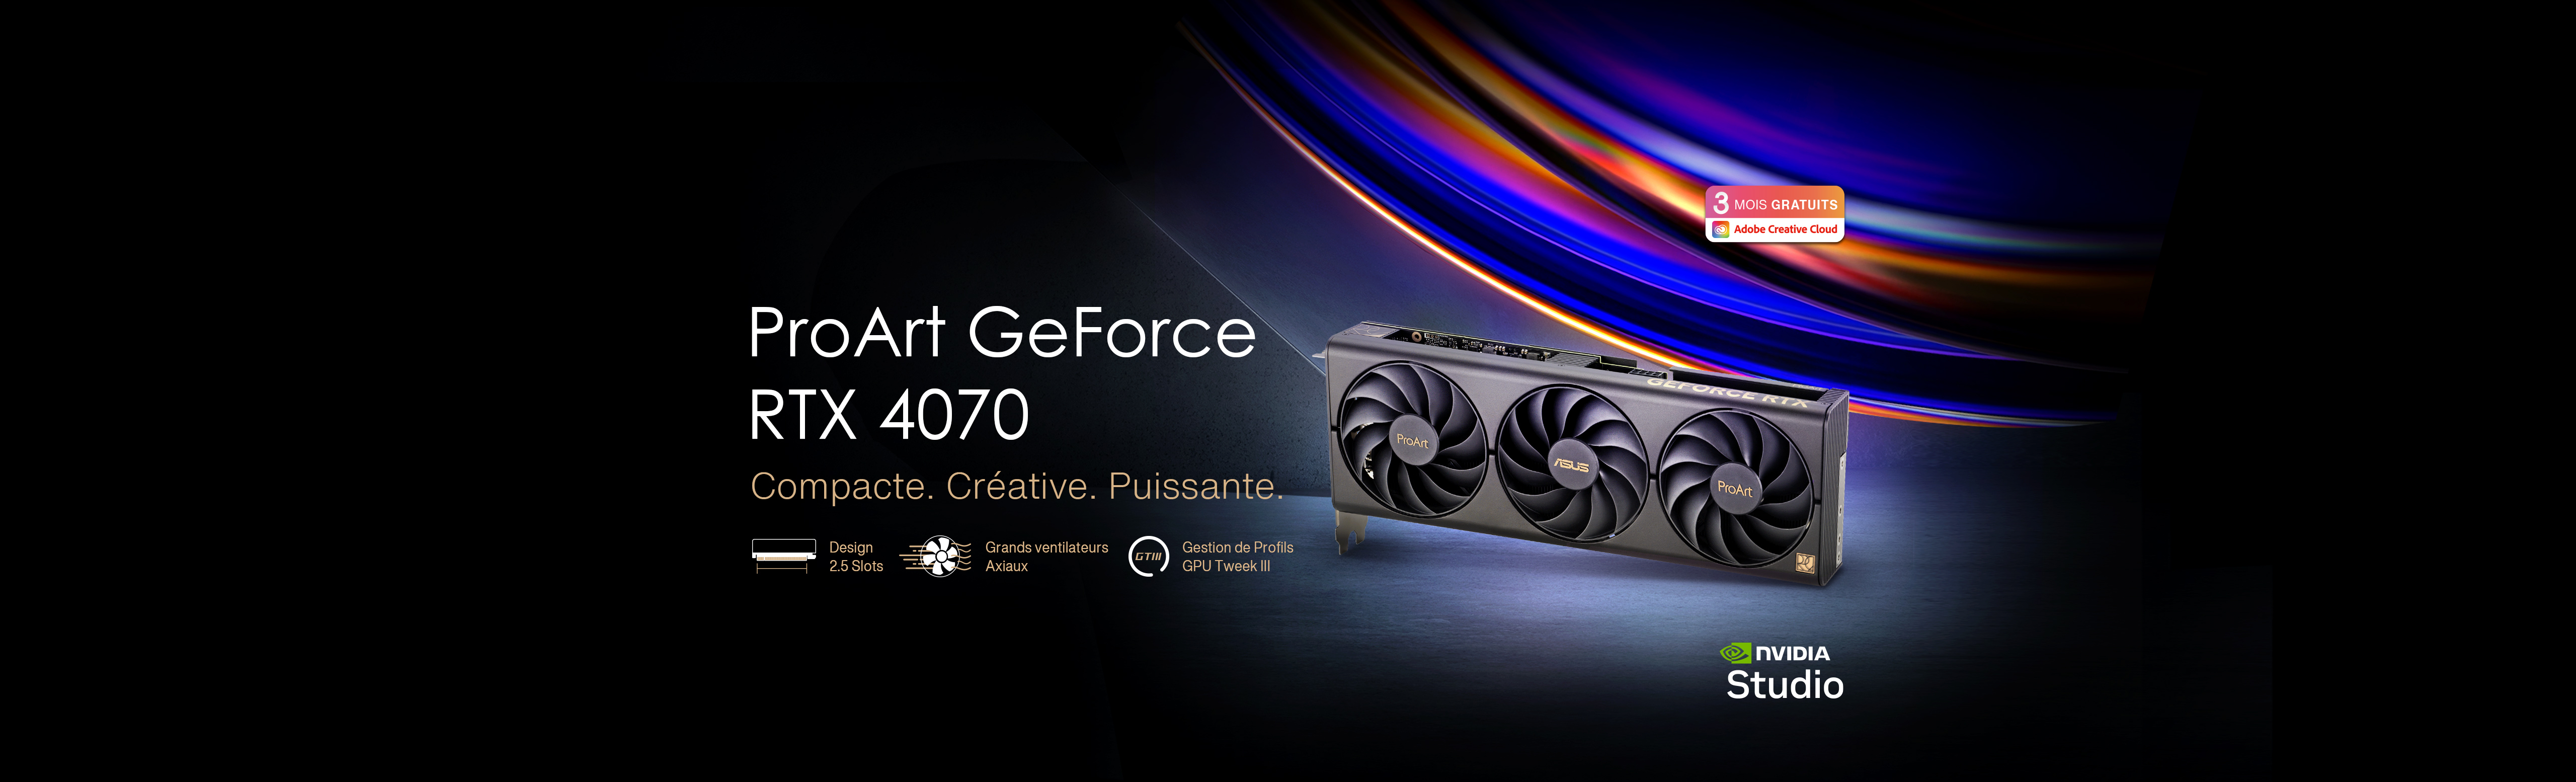 Carte graphique ASUS ProArt GeForce RTX™ 4070 posée sur un sol en béton brut avec les logos d'Adobe Creative Cloud et de NVIDIA Studio